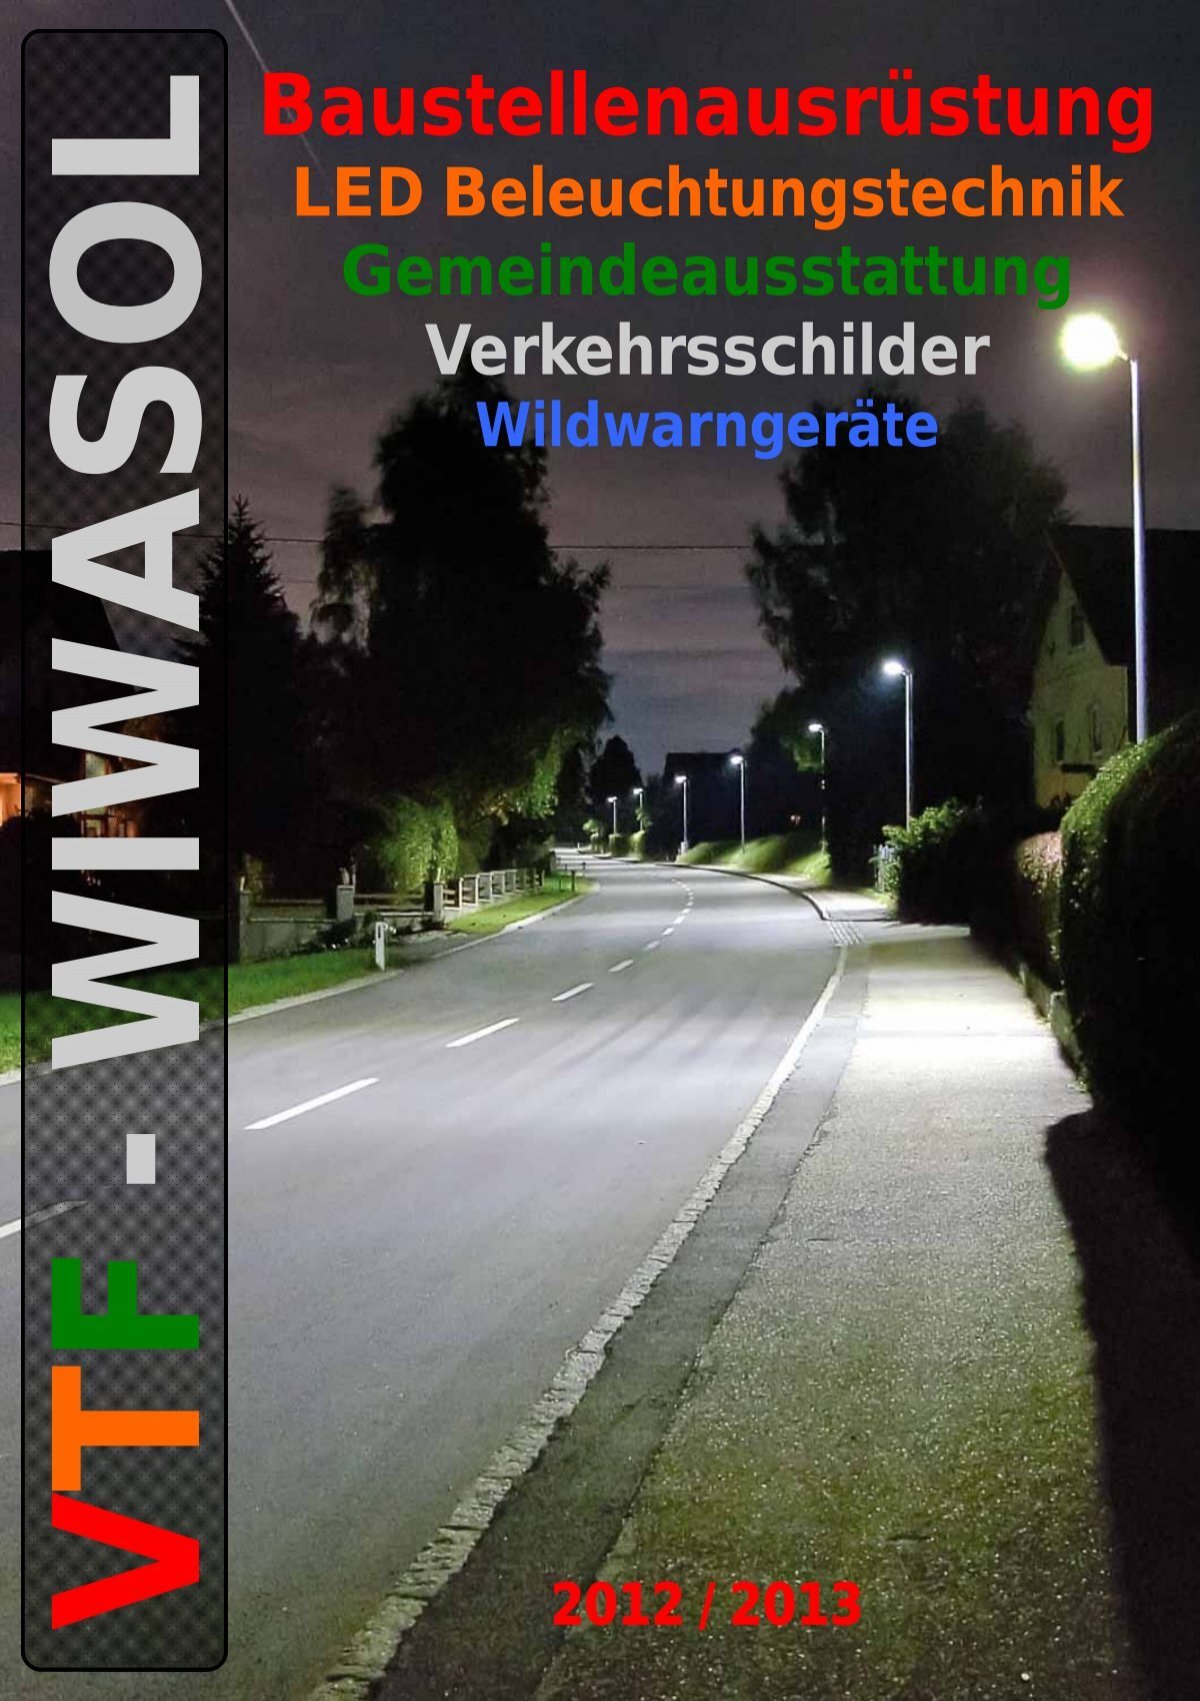 2x Wildwarner Wildwarngerät Wildwarngerät Auto Straße Wildunfall Wildwechsel